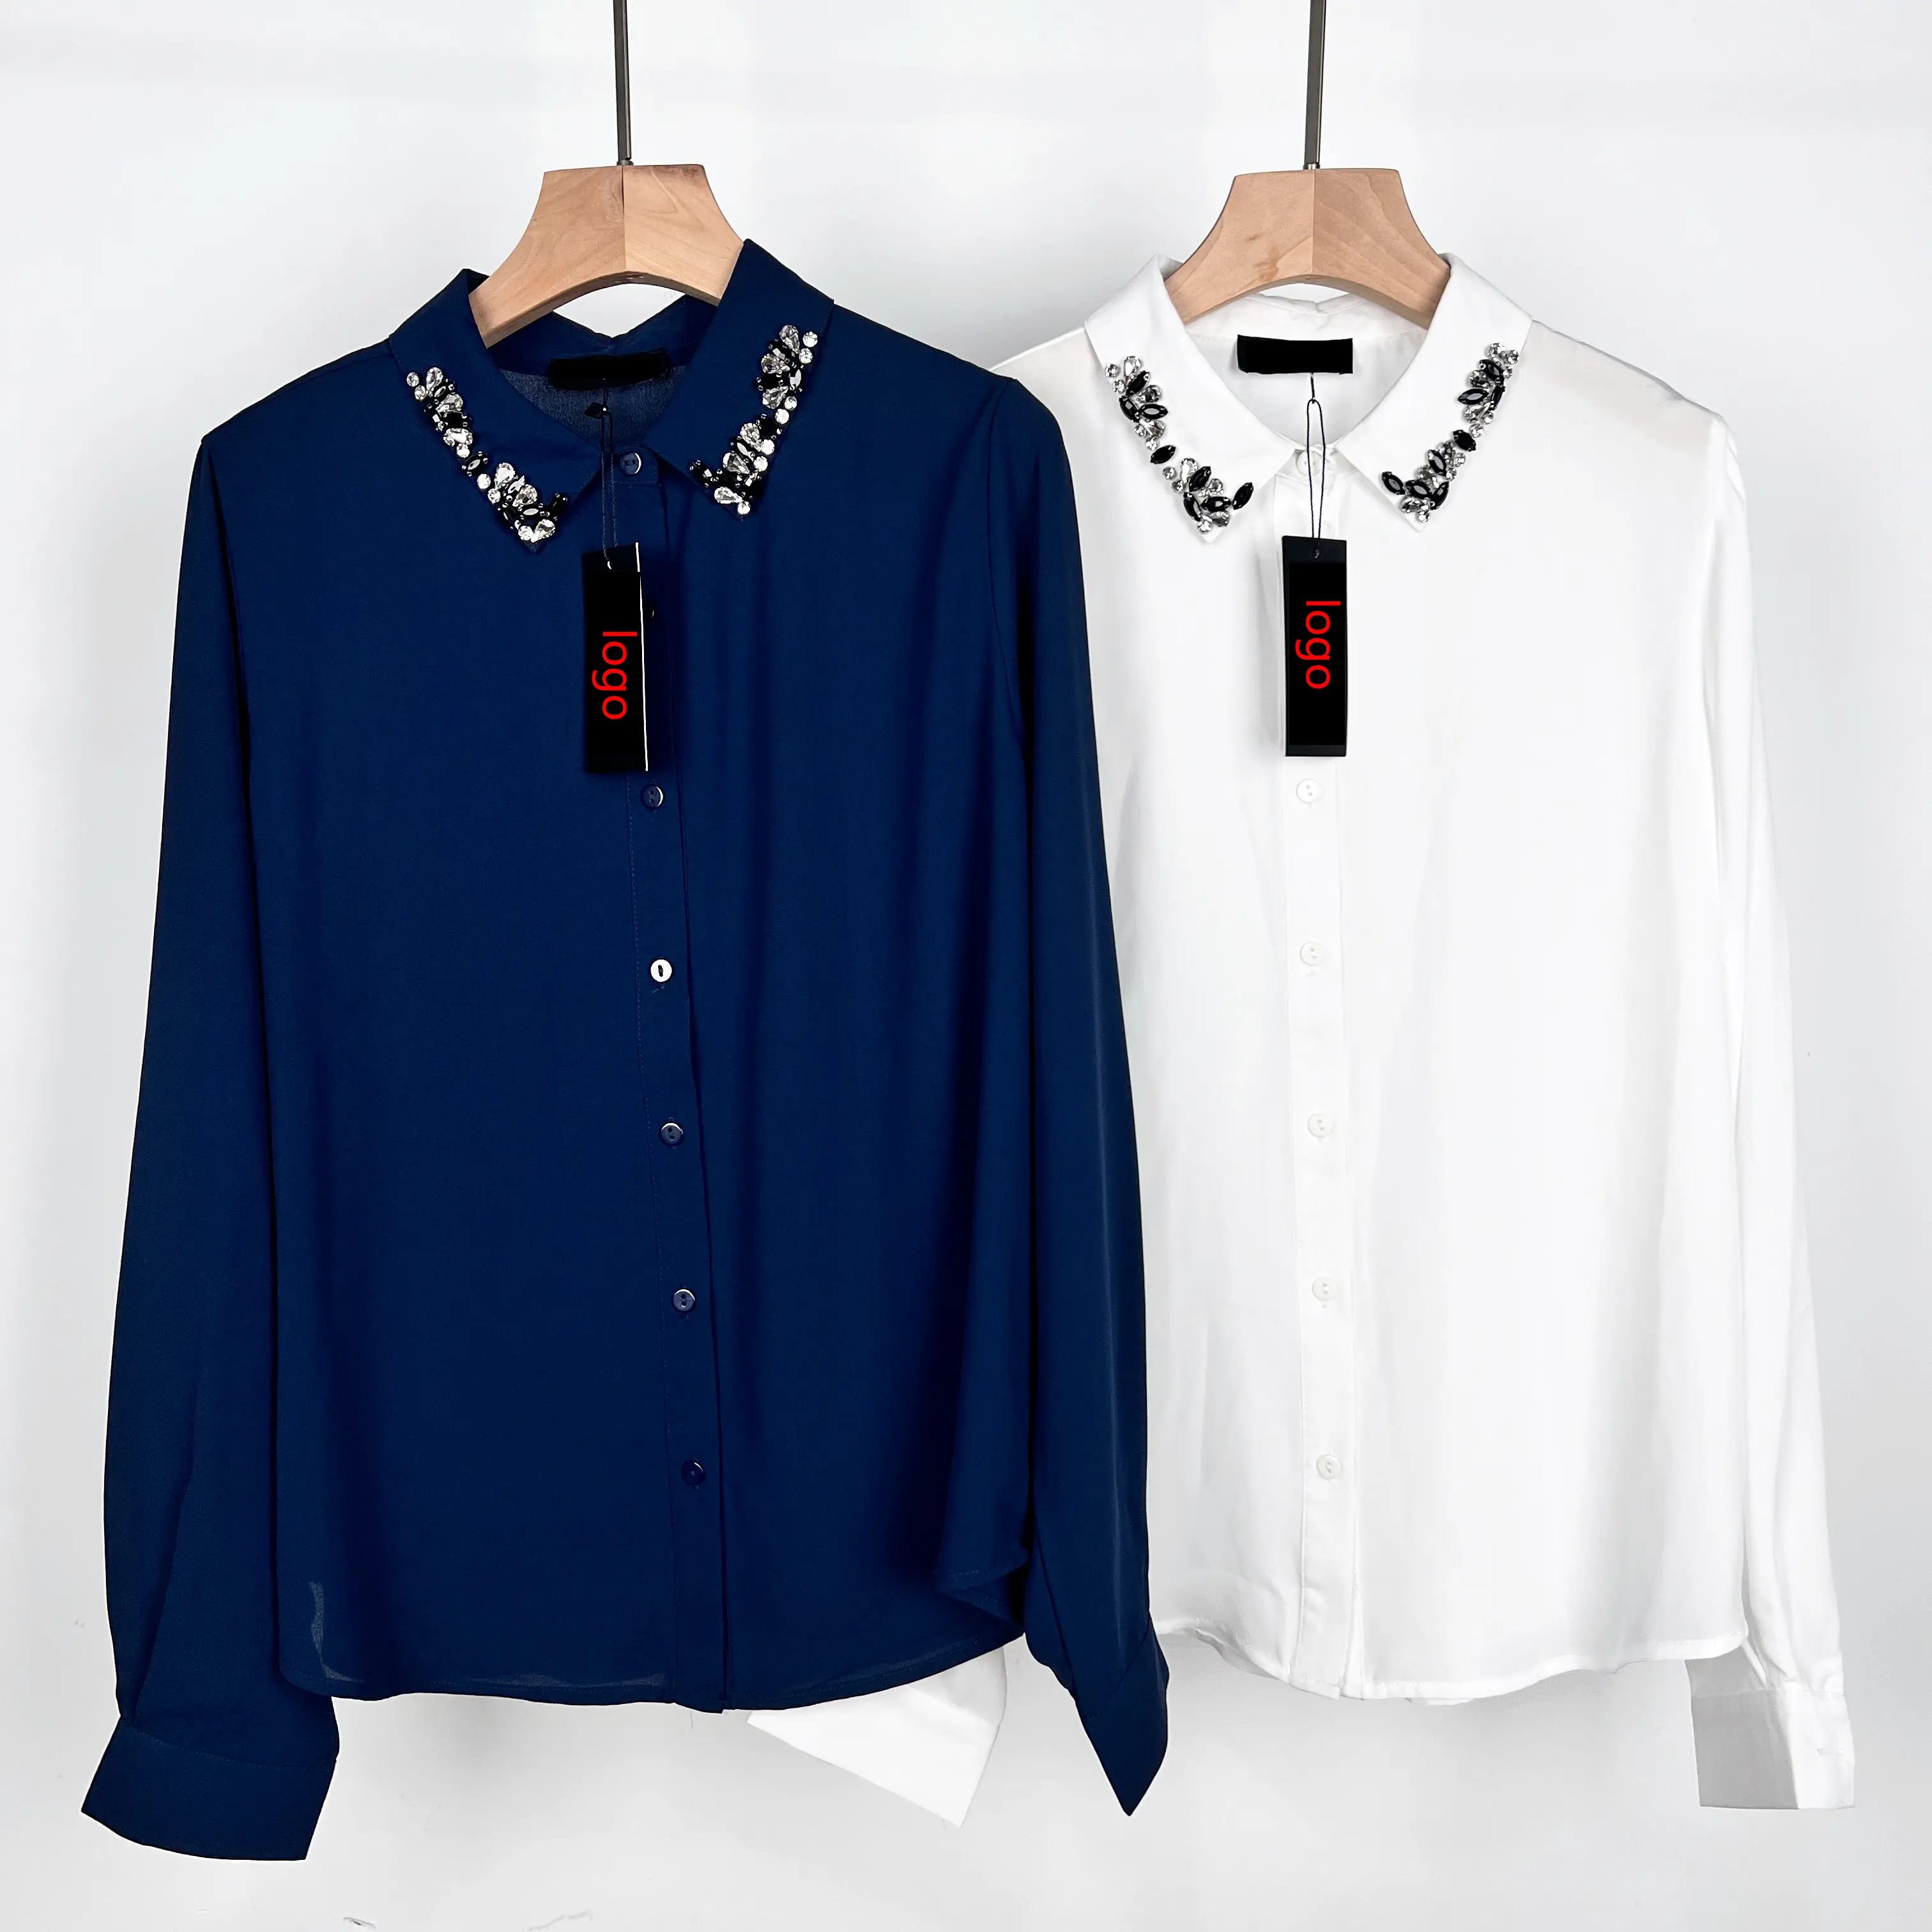 Camisas para mulheres com strass com botões e elegância, design de mangas compridas para fabricantes